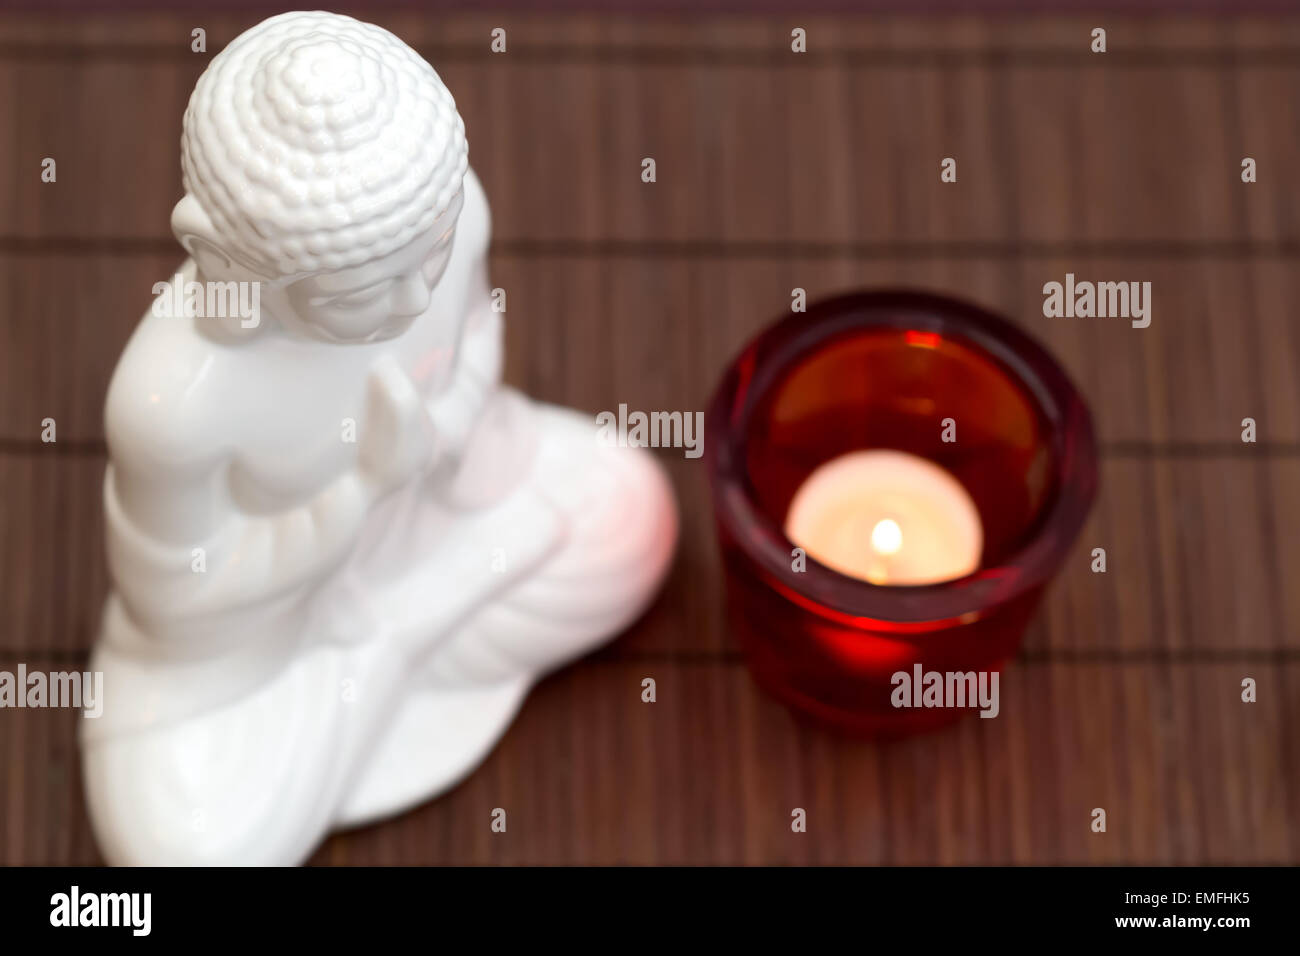 Figura blanca en pose de meditación con vela de cristal rojo desde arriba Foto de stock